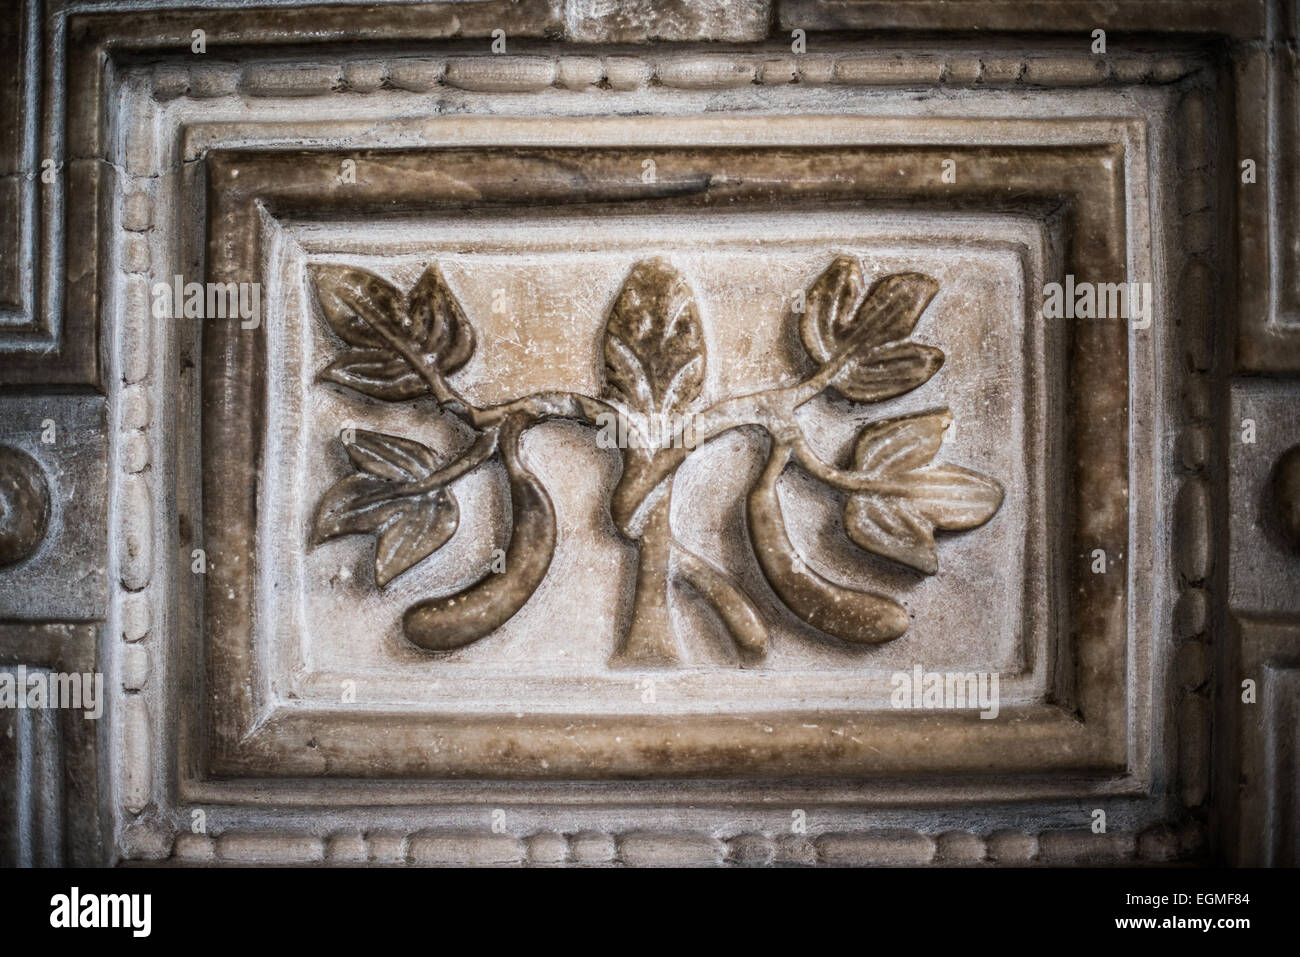 ISTANBUL, Turquie - relief détaillé des décorations de la porte de marbre dans l'enceinte supérieure sud, ou galerie, de Sainte-Sophie. Il a été utilisé par les participants dans synodes. Il date du 6th centime et sépare les chambres privées de l'Empereur du lieu de rencontre des membres de l'Eglise. Construit en 537, il a servi de cathédrale orthodoxe orientale, de cathédrale catholique romaine, de mosquée et maintenant de musée. Également connu sous le nom d'Ayasofya ou d'Aya Sofia, c'est l'un des principaux monuments d'Istanbul. En juillet 2020, le président turc Recep Tayyip Erdogan décrète que Sainte-Sophie serait contre Banque D'Images